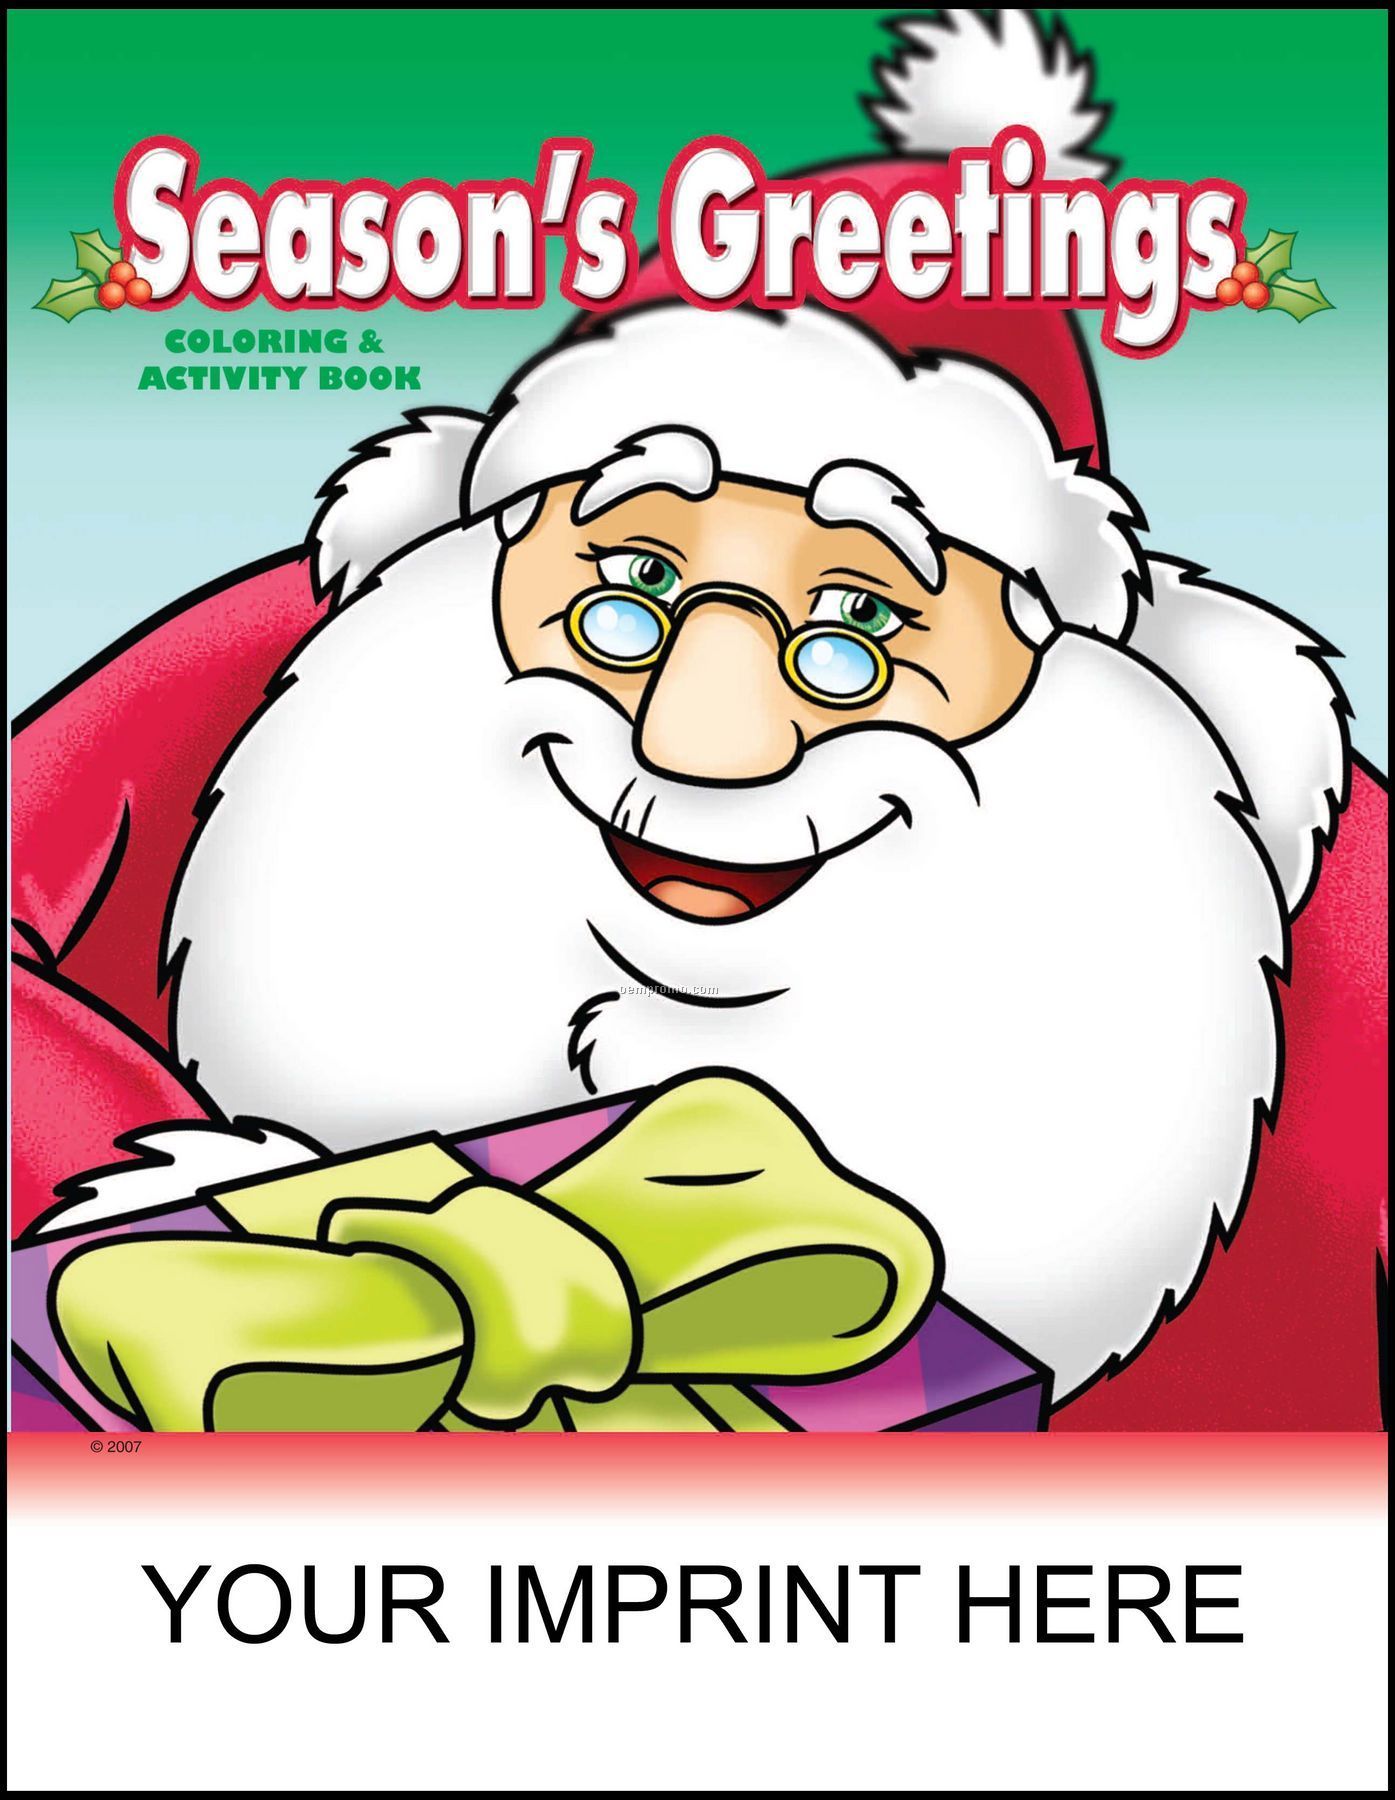 Season's Greetings Coloring & Activity Book - Santa Holding Gift